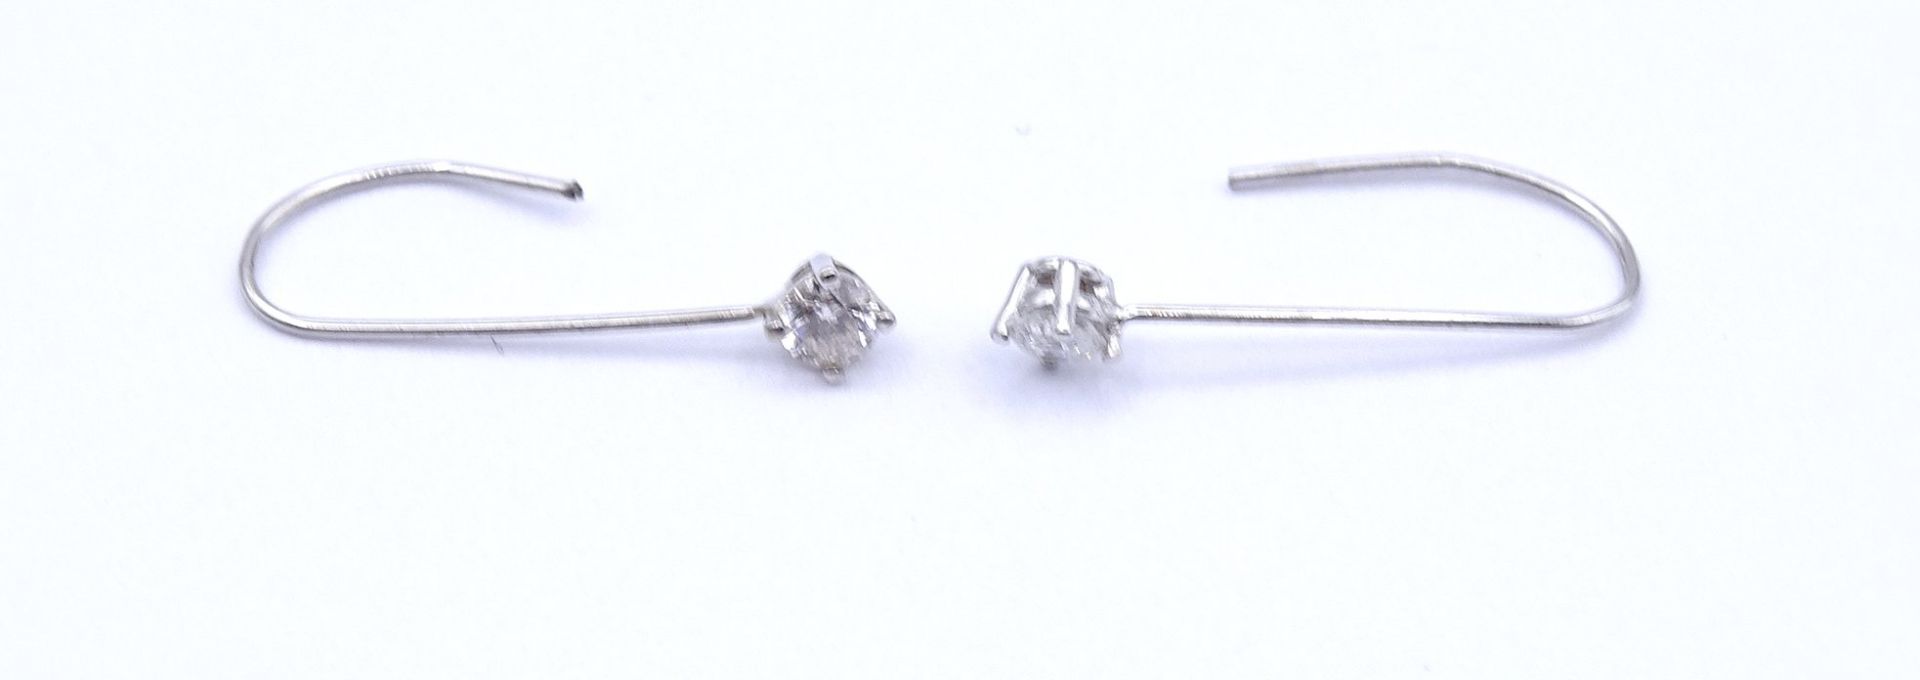 Paar Ohrhänger mit Diamanten 0,18ct., WG 14K ungest., L. 1,7cm, zus. 0,27g. Gold geprüft - Image 2 of 3